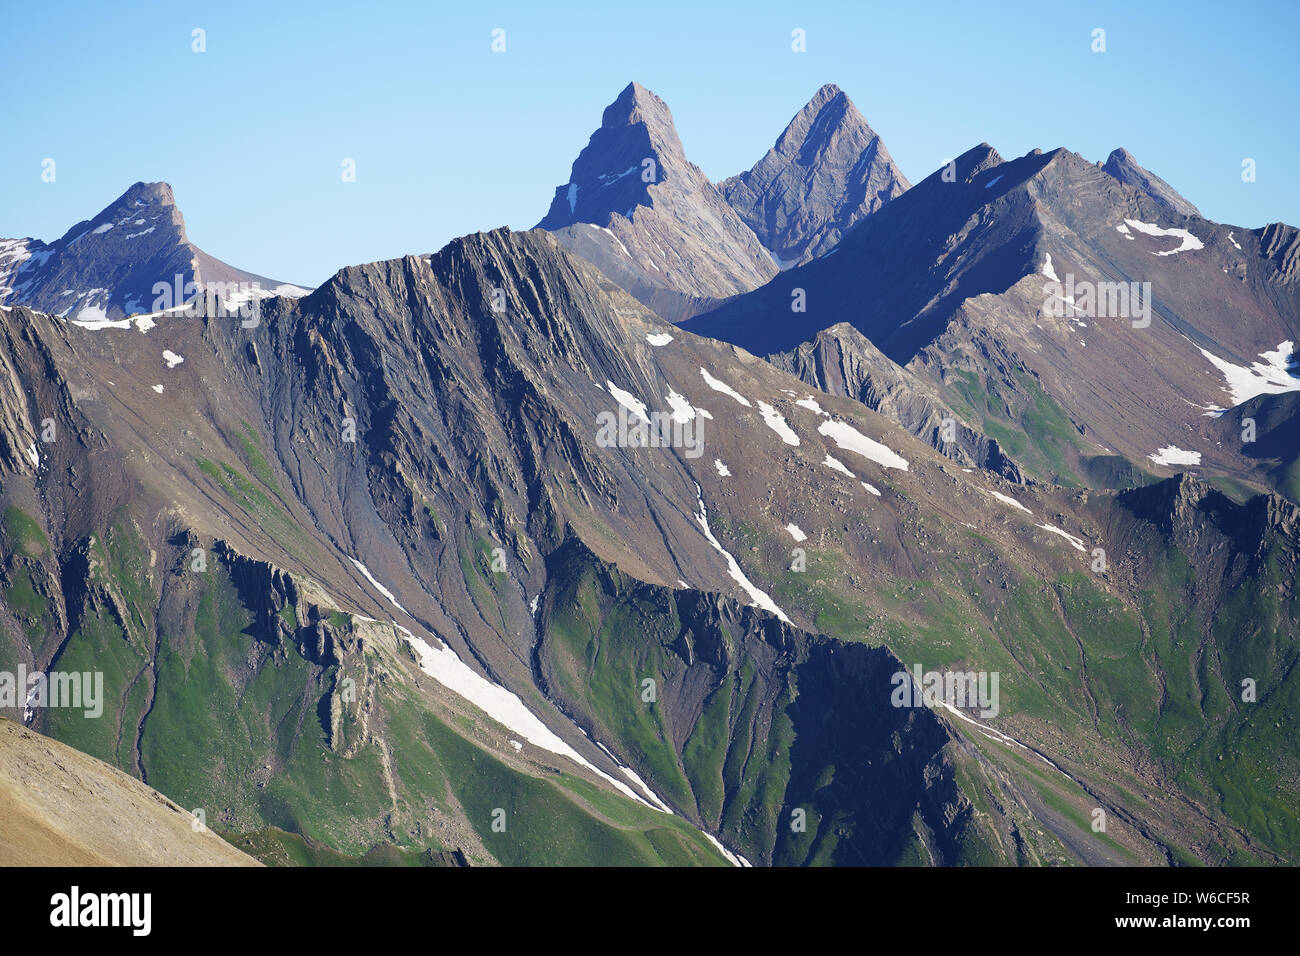 VUE AÉRIENNE depuis le sud-est. Les aiguilles d'Arves (altitude : 3515 mètres) et leurs environs de terres arides. Valloire, Savoie, France. Banque D'Images